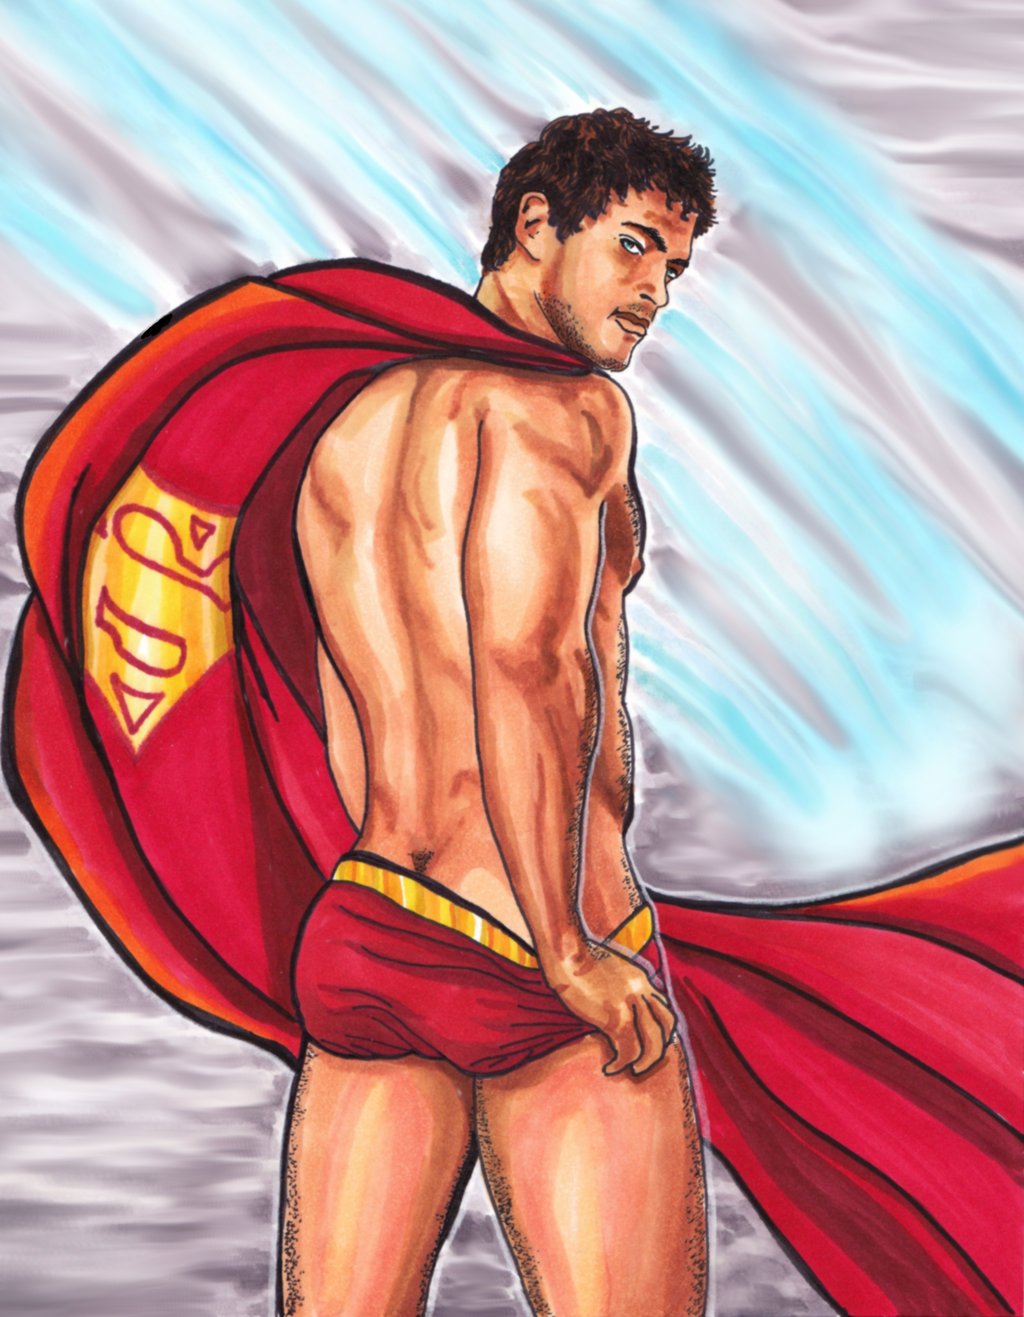 Naked superheroes, super-heróis nus, naked superman.